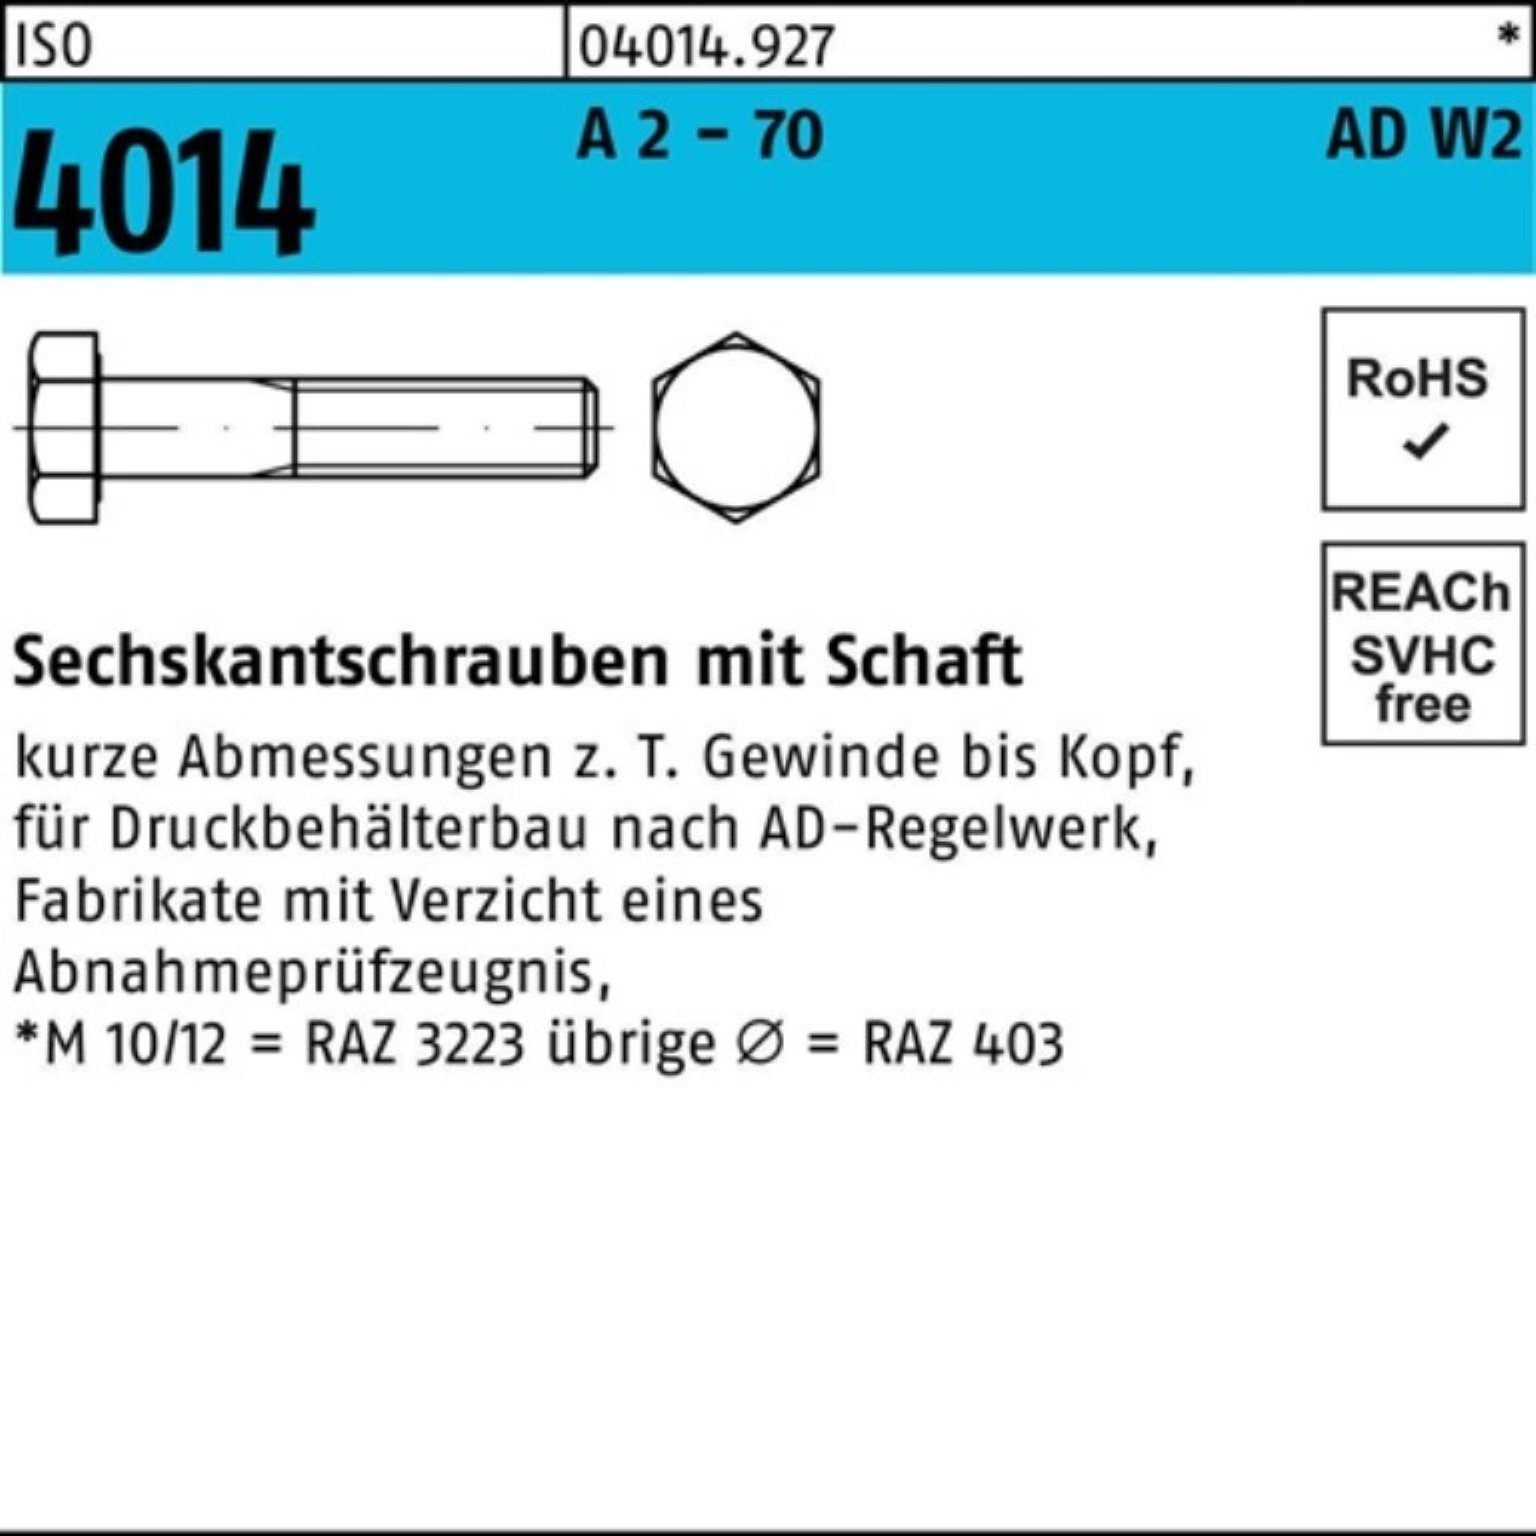 100er Sechskantschraube M12x Bufab 4014 A 25 AD-W2 Sechskantschraube Schaft 70 2 - 80 ISO Pack